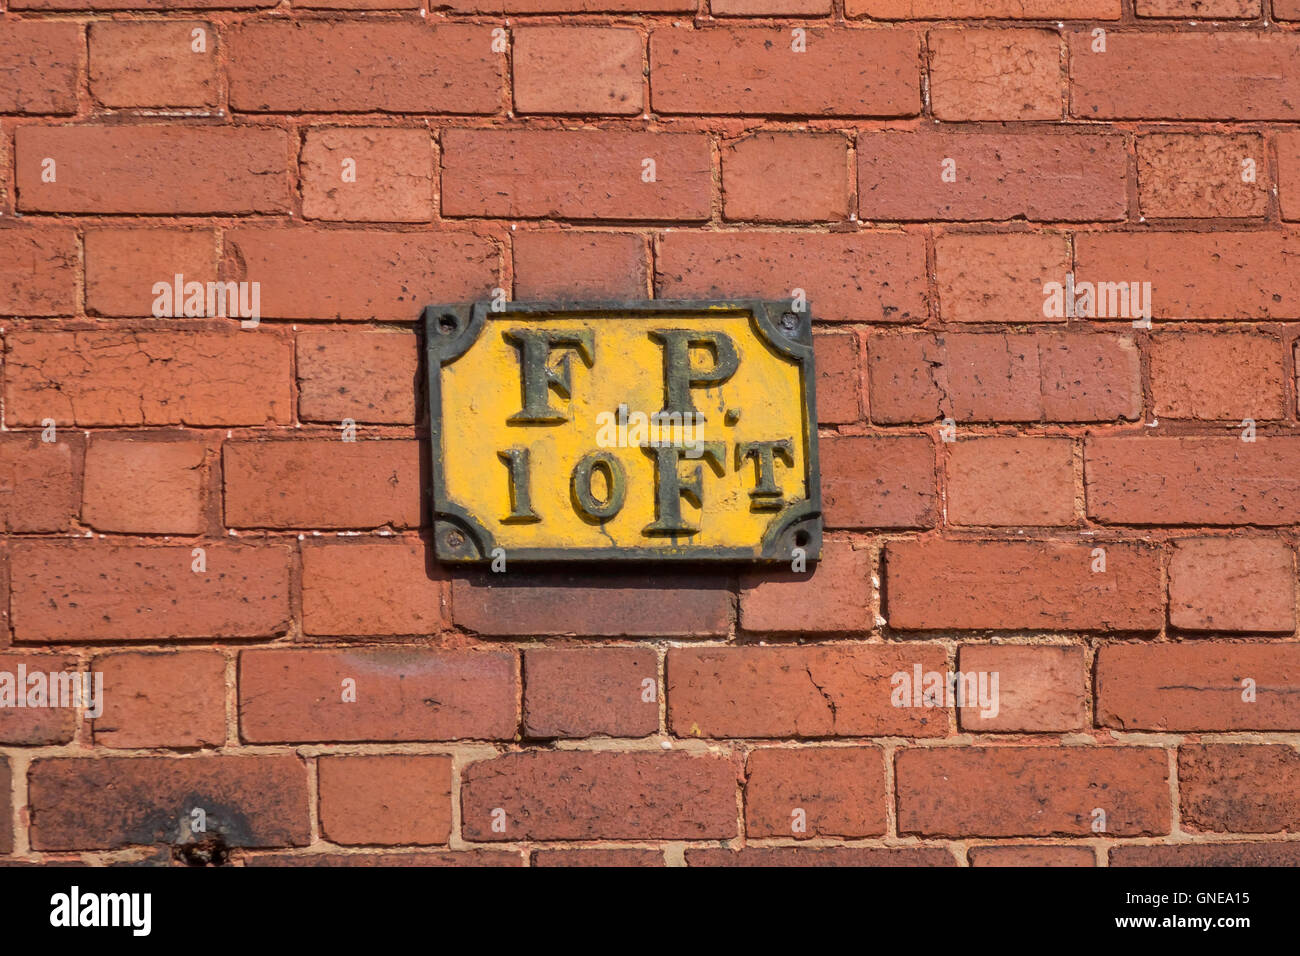 Un viejo cartel de hierro fundido F.P. 10 ft. sobre una pared de ladrillo rojo indicando un hidrante diez pies de la pared pie. Foto de stock